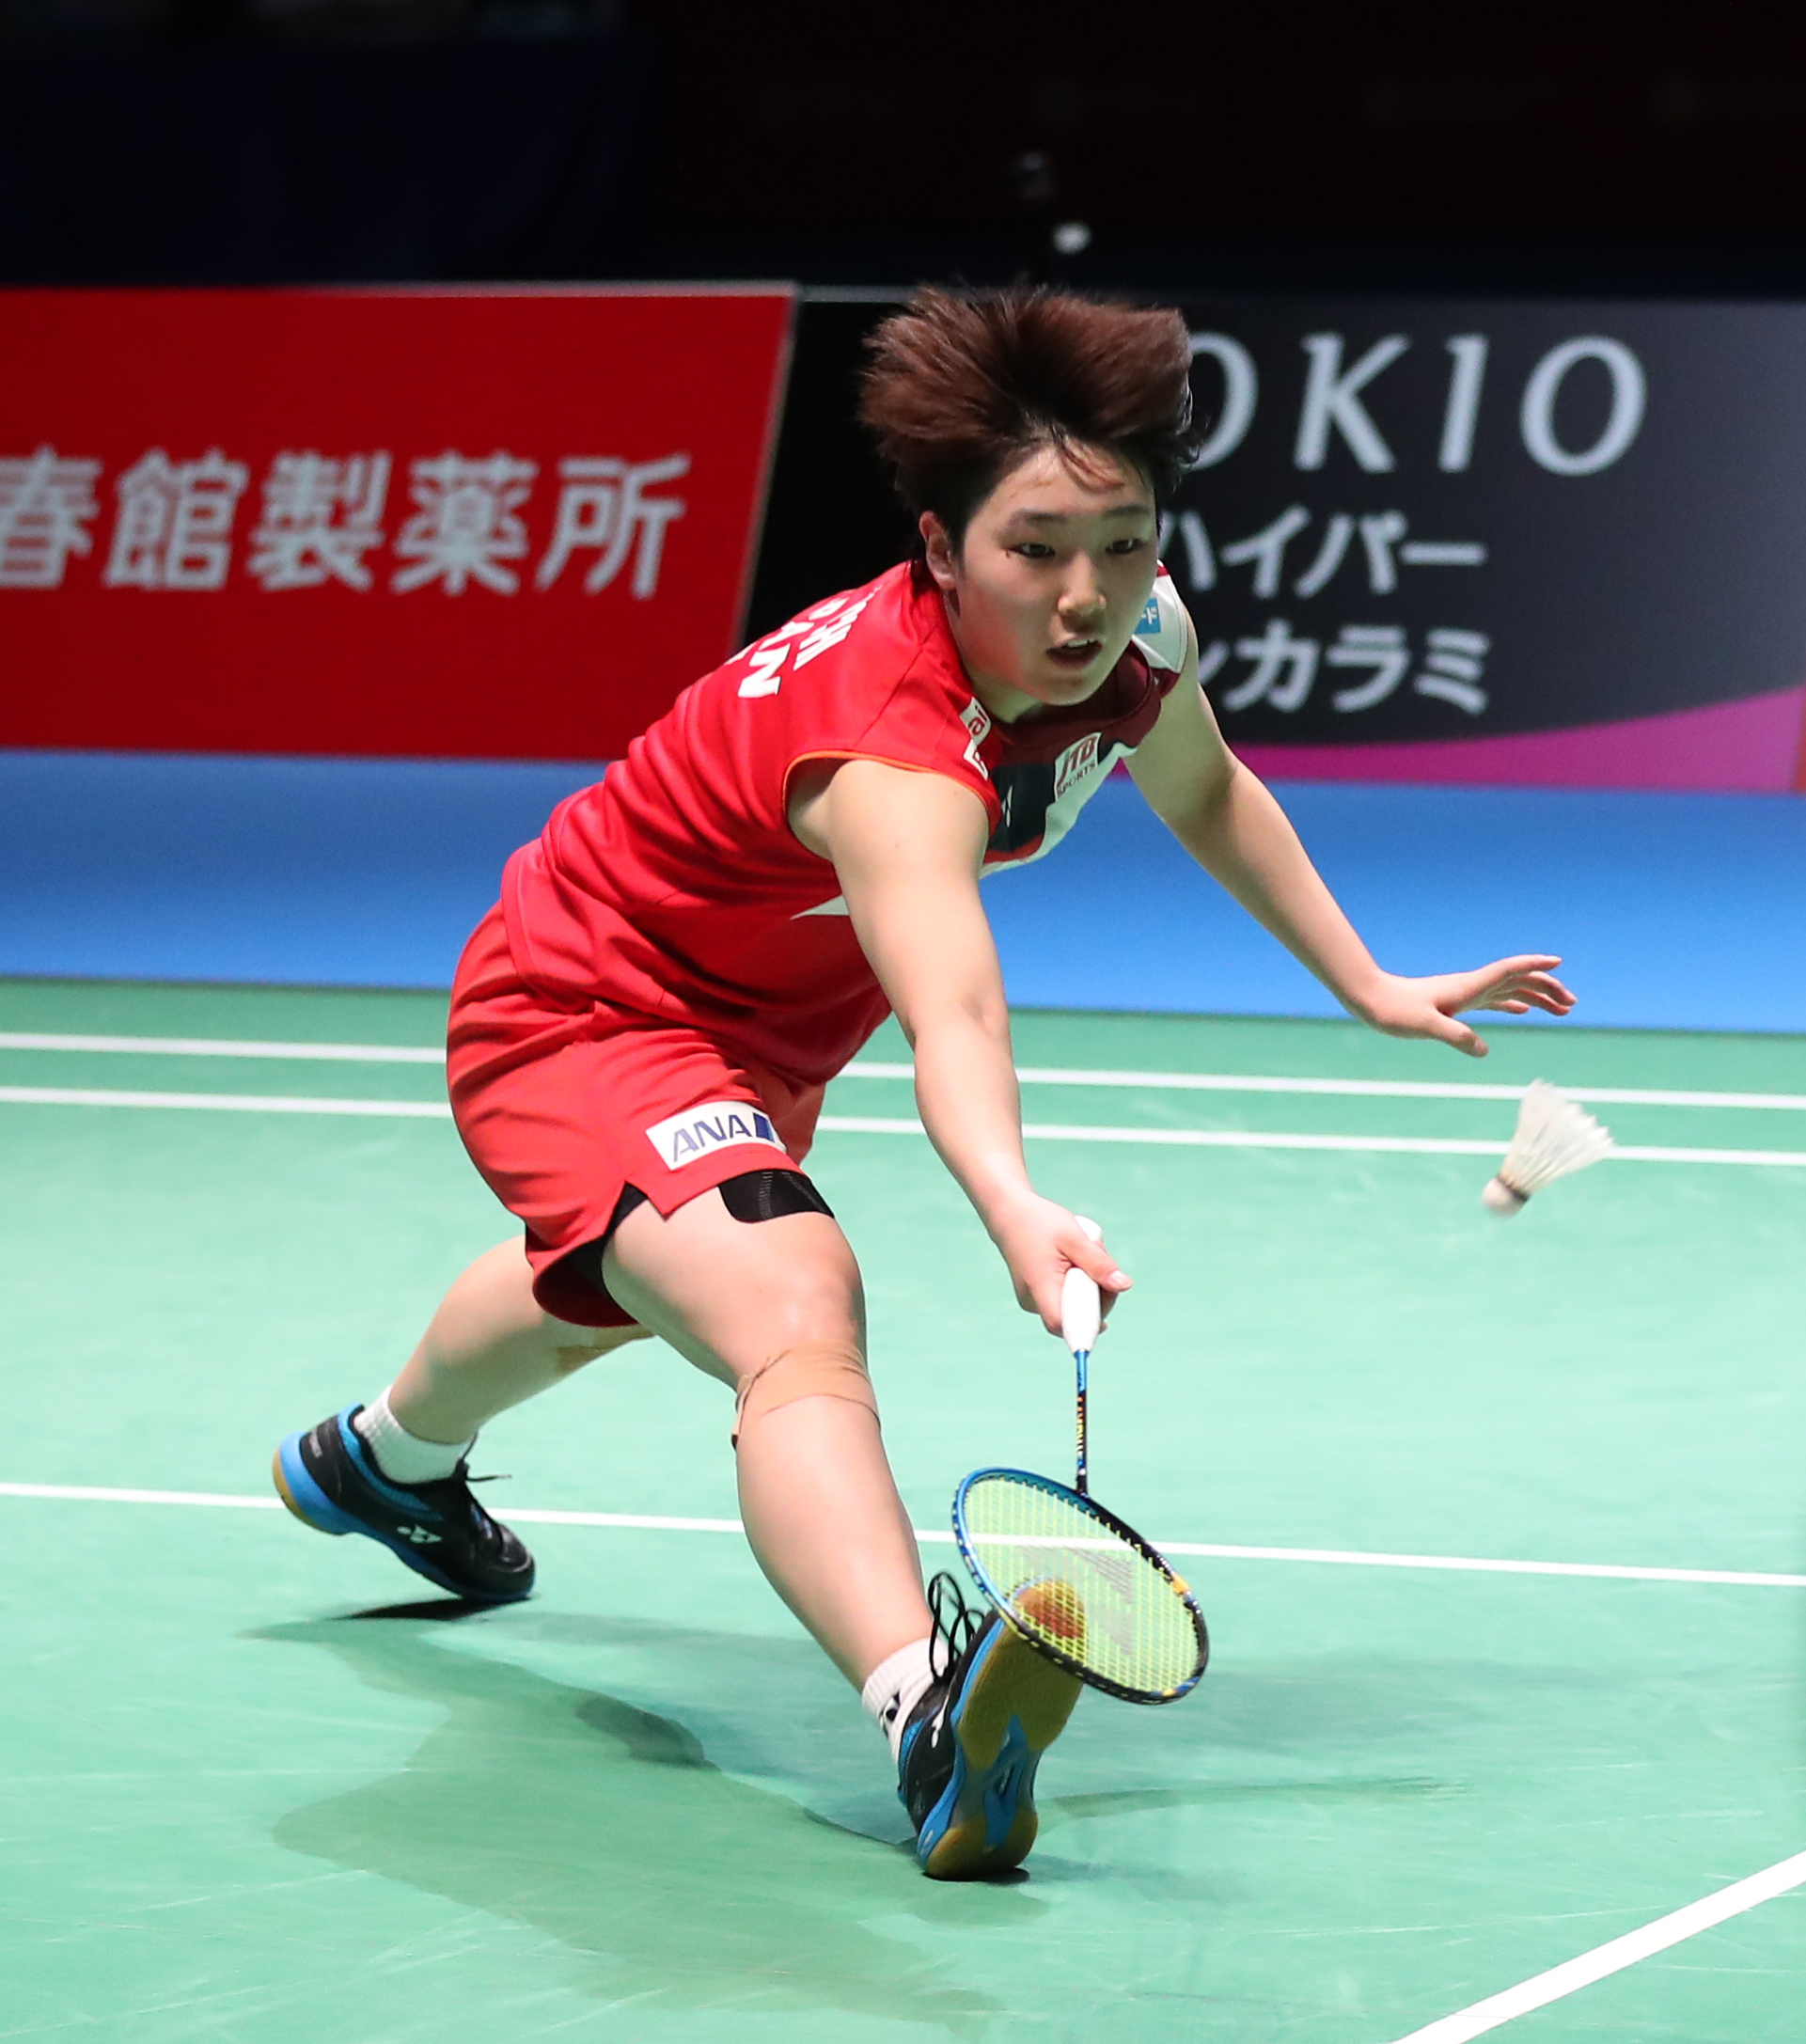 在日本东京举行的2019年日本羽毛球公开赛女子单打决赛中,日本选手